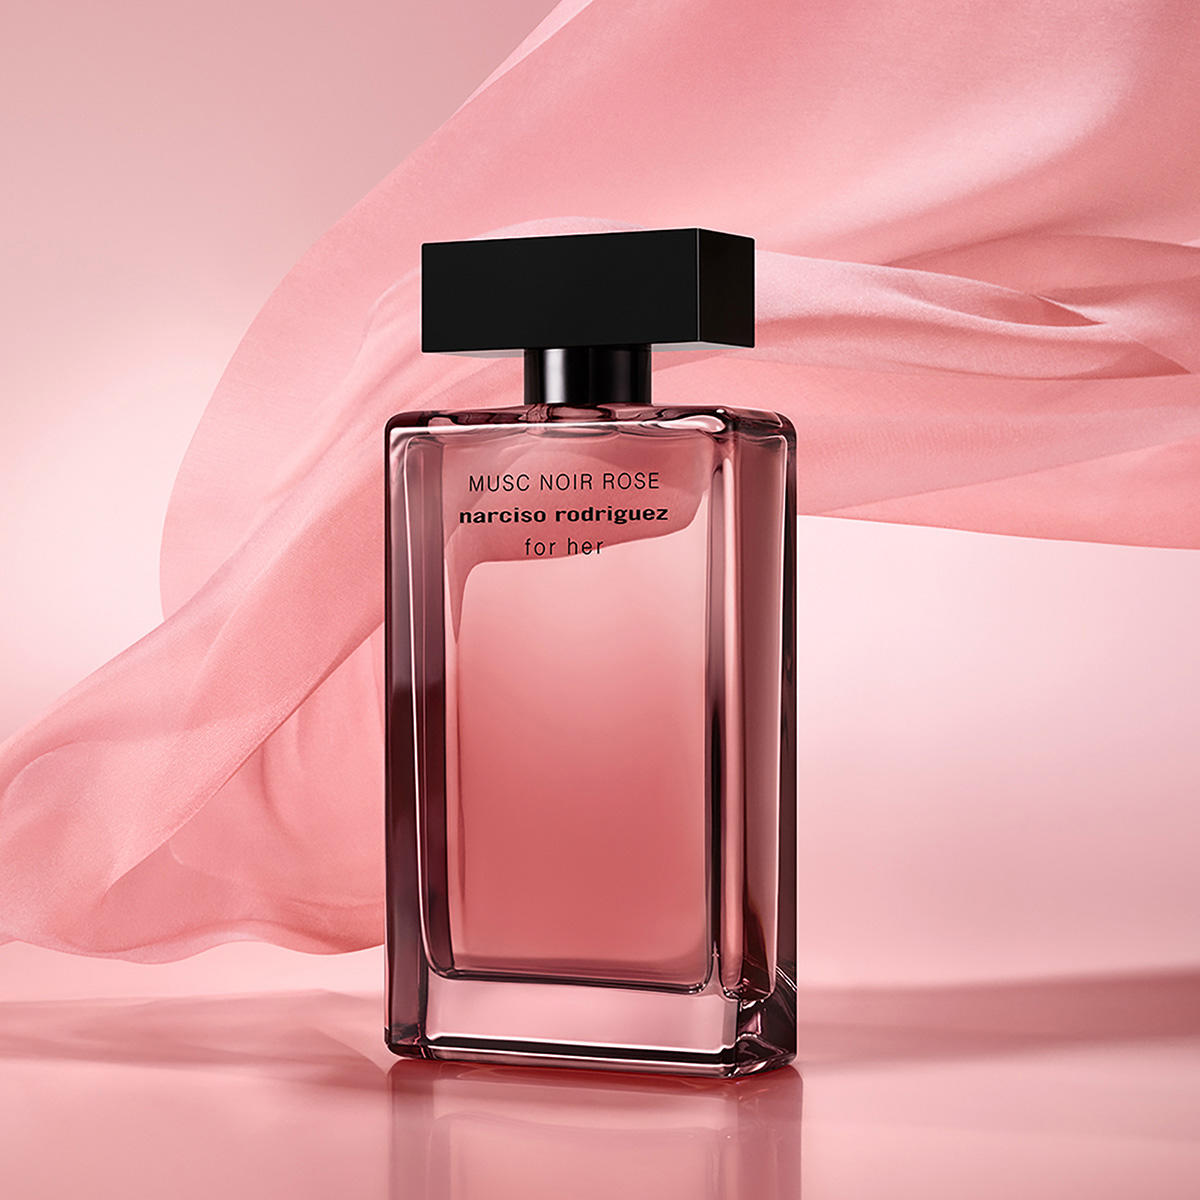 Narciso Rodriguez for her MUSC NOIR ROSE Eau de Parfum 50 ml - 3